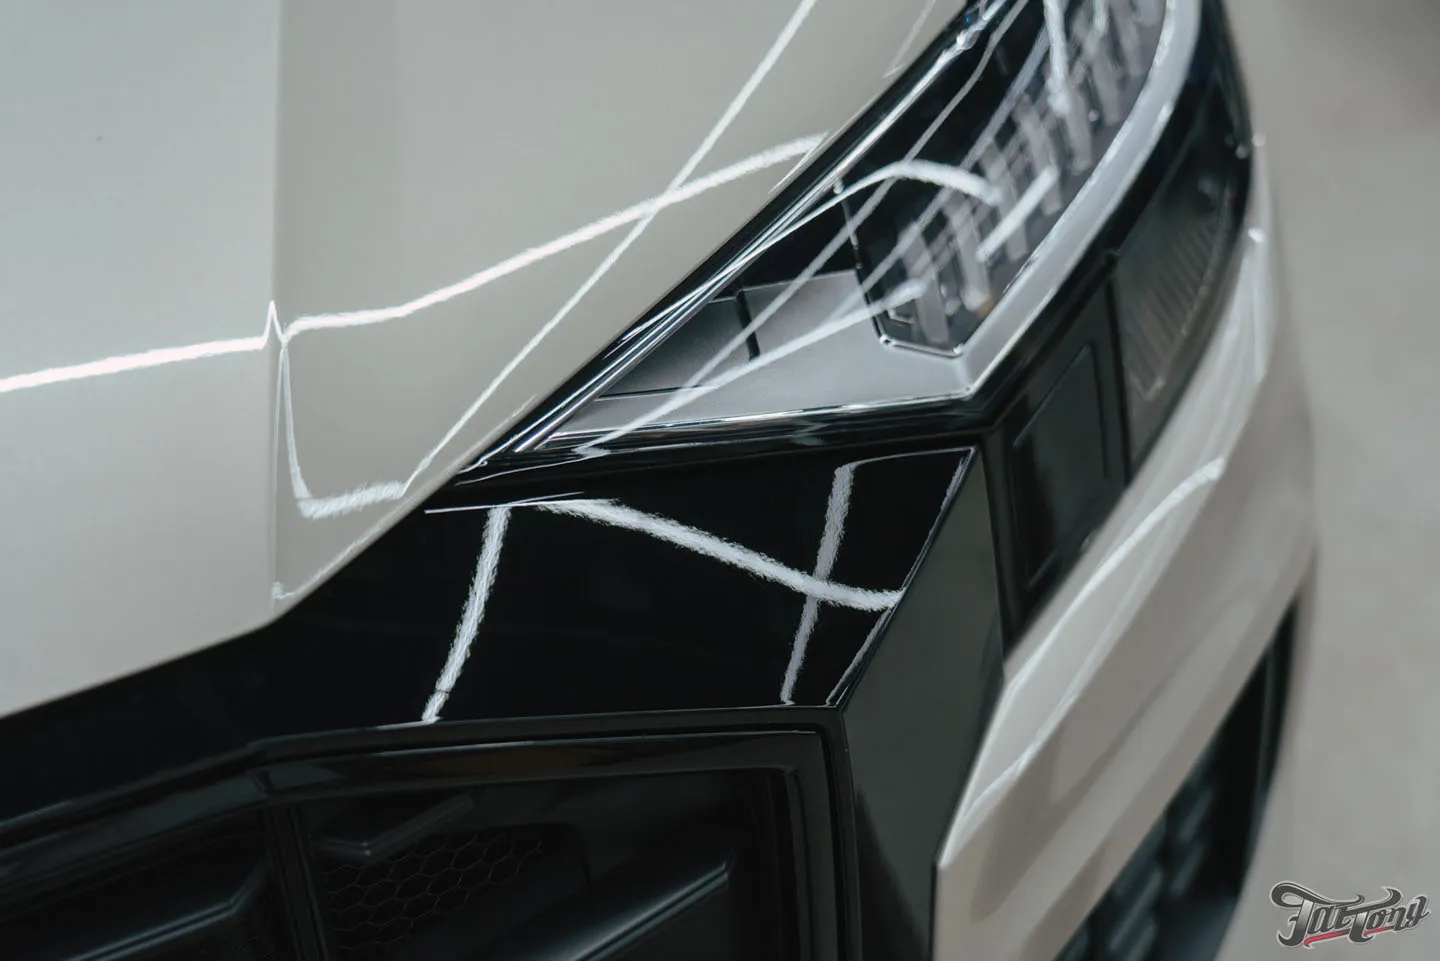 Оклейка кузова Audi Q8 глянцевым полиуретаном + защита глянца и мониторов в салоне